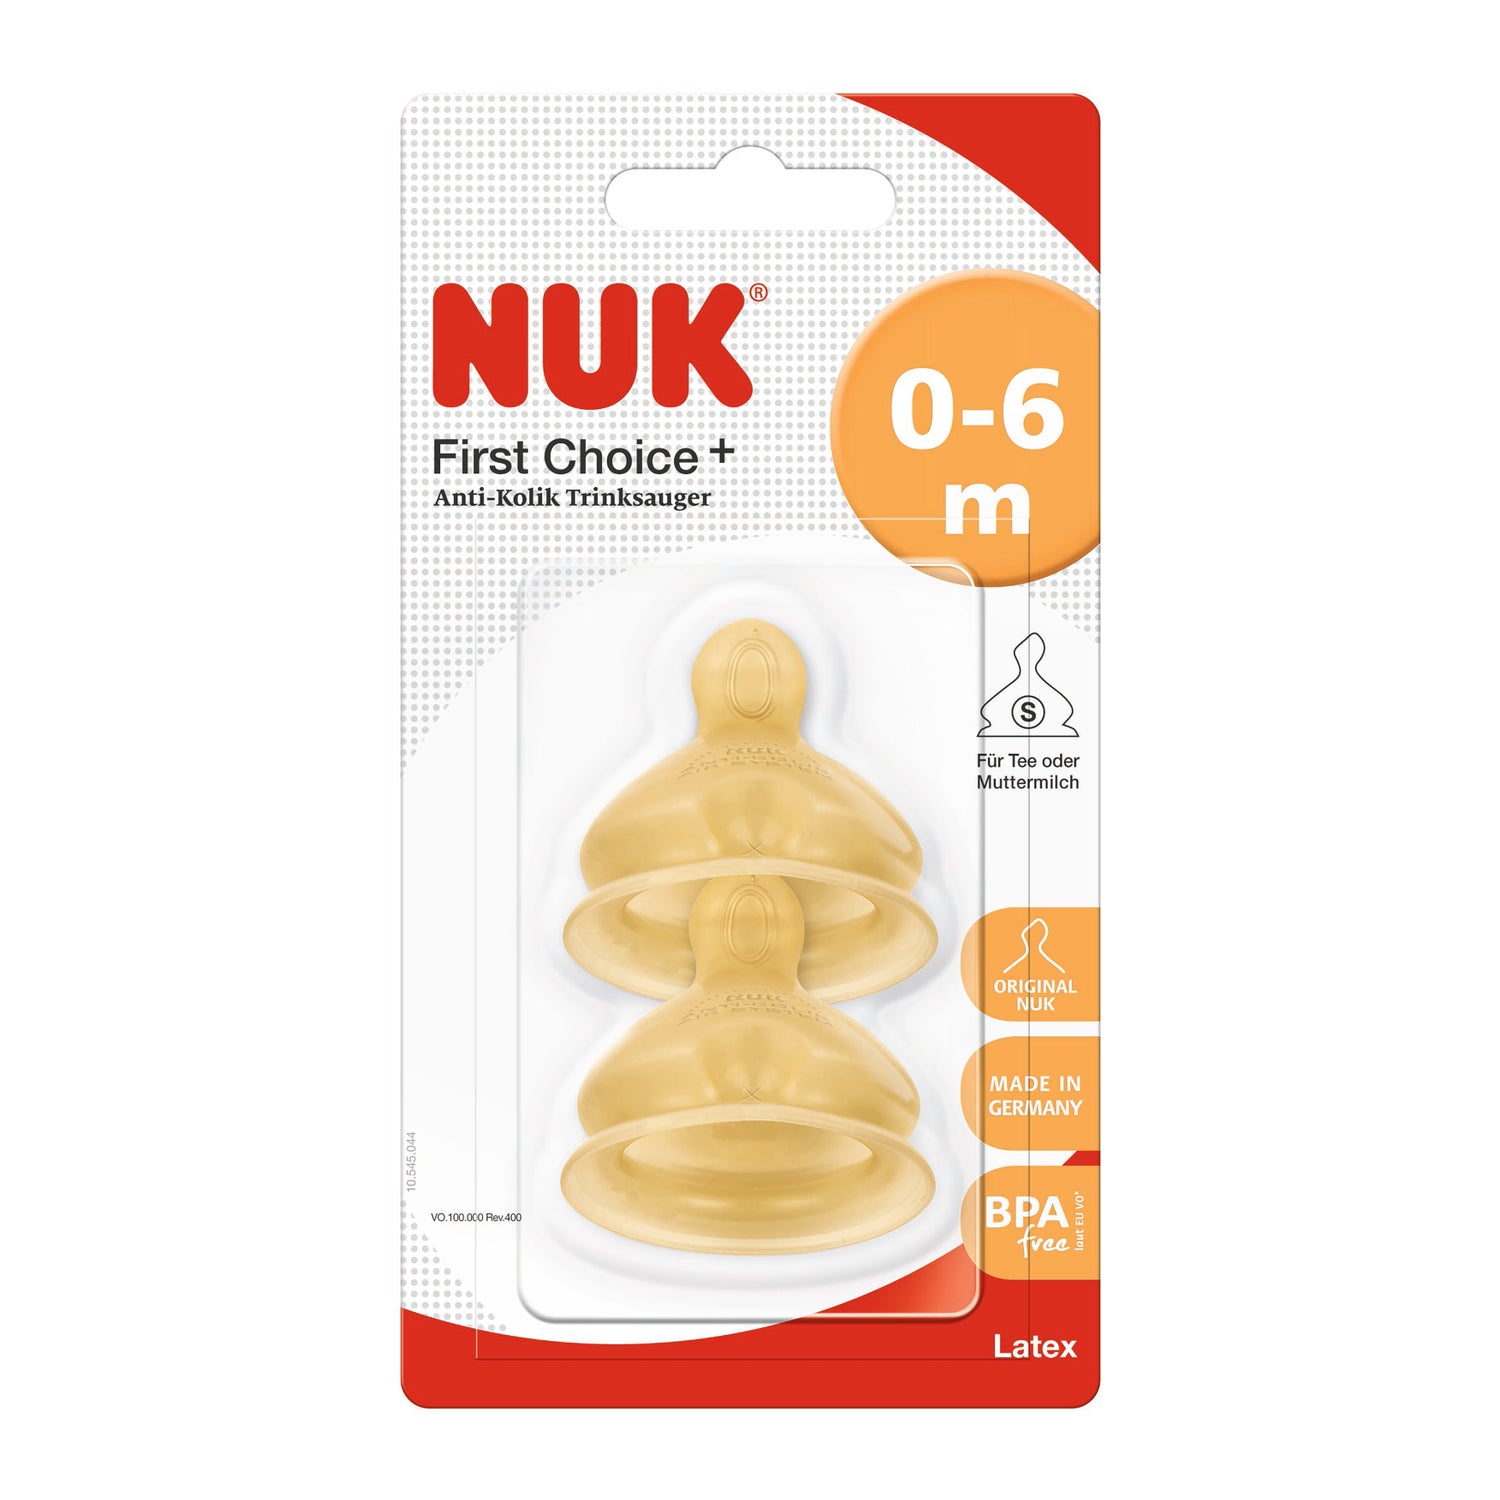 NUK - Todas las tetinas de #NUK además de contar con nuestro sistema  anticólicos #NUKAirSystem y ser ortodónticas, vienen en tallas dependiendo  de la edad de tu bebé y lo que va